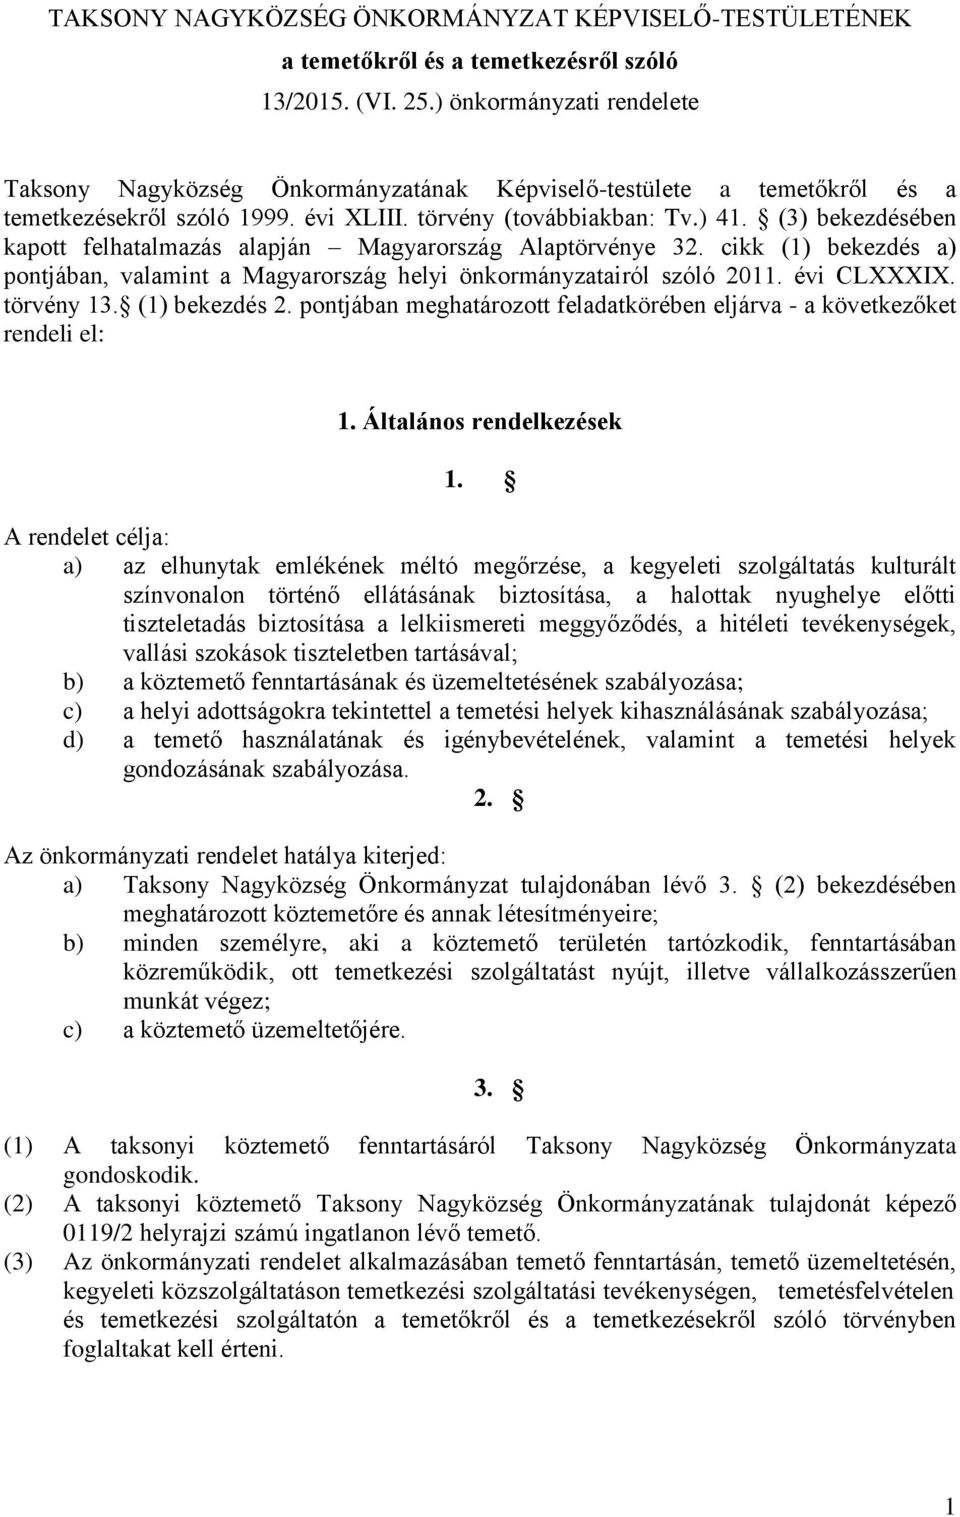 (3) bekezdésében kapott felhatalmazás alapján Magyarország Alaptörvénye 32. cikk (1) bekezdés a) pontjában, valamint a Magyarország helyi önkormányzatairól szóló 2011. évi CLXXXIX. törvény 13.